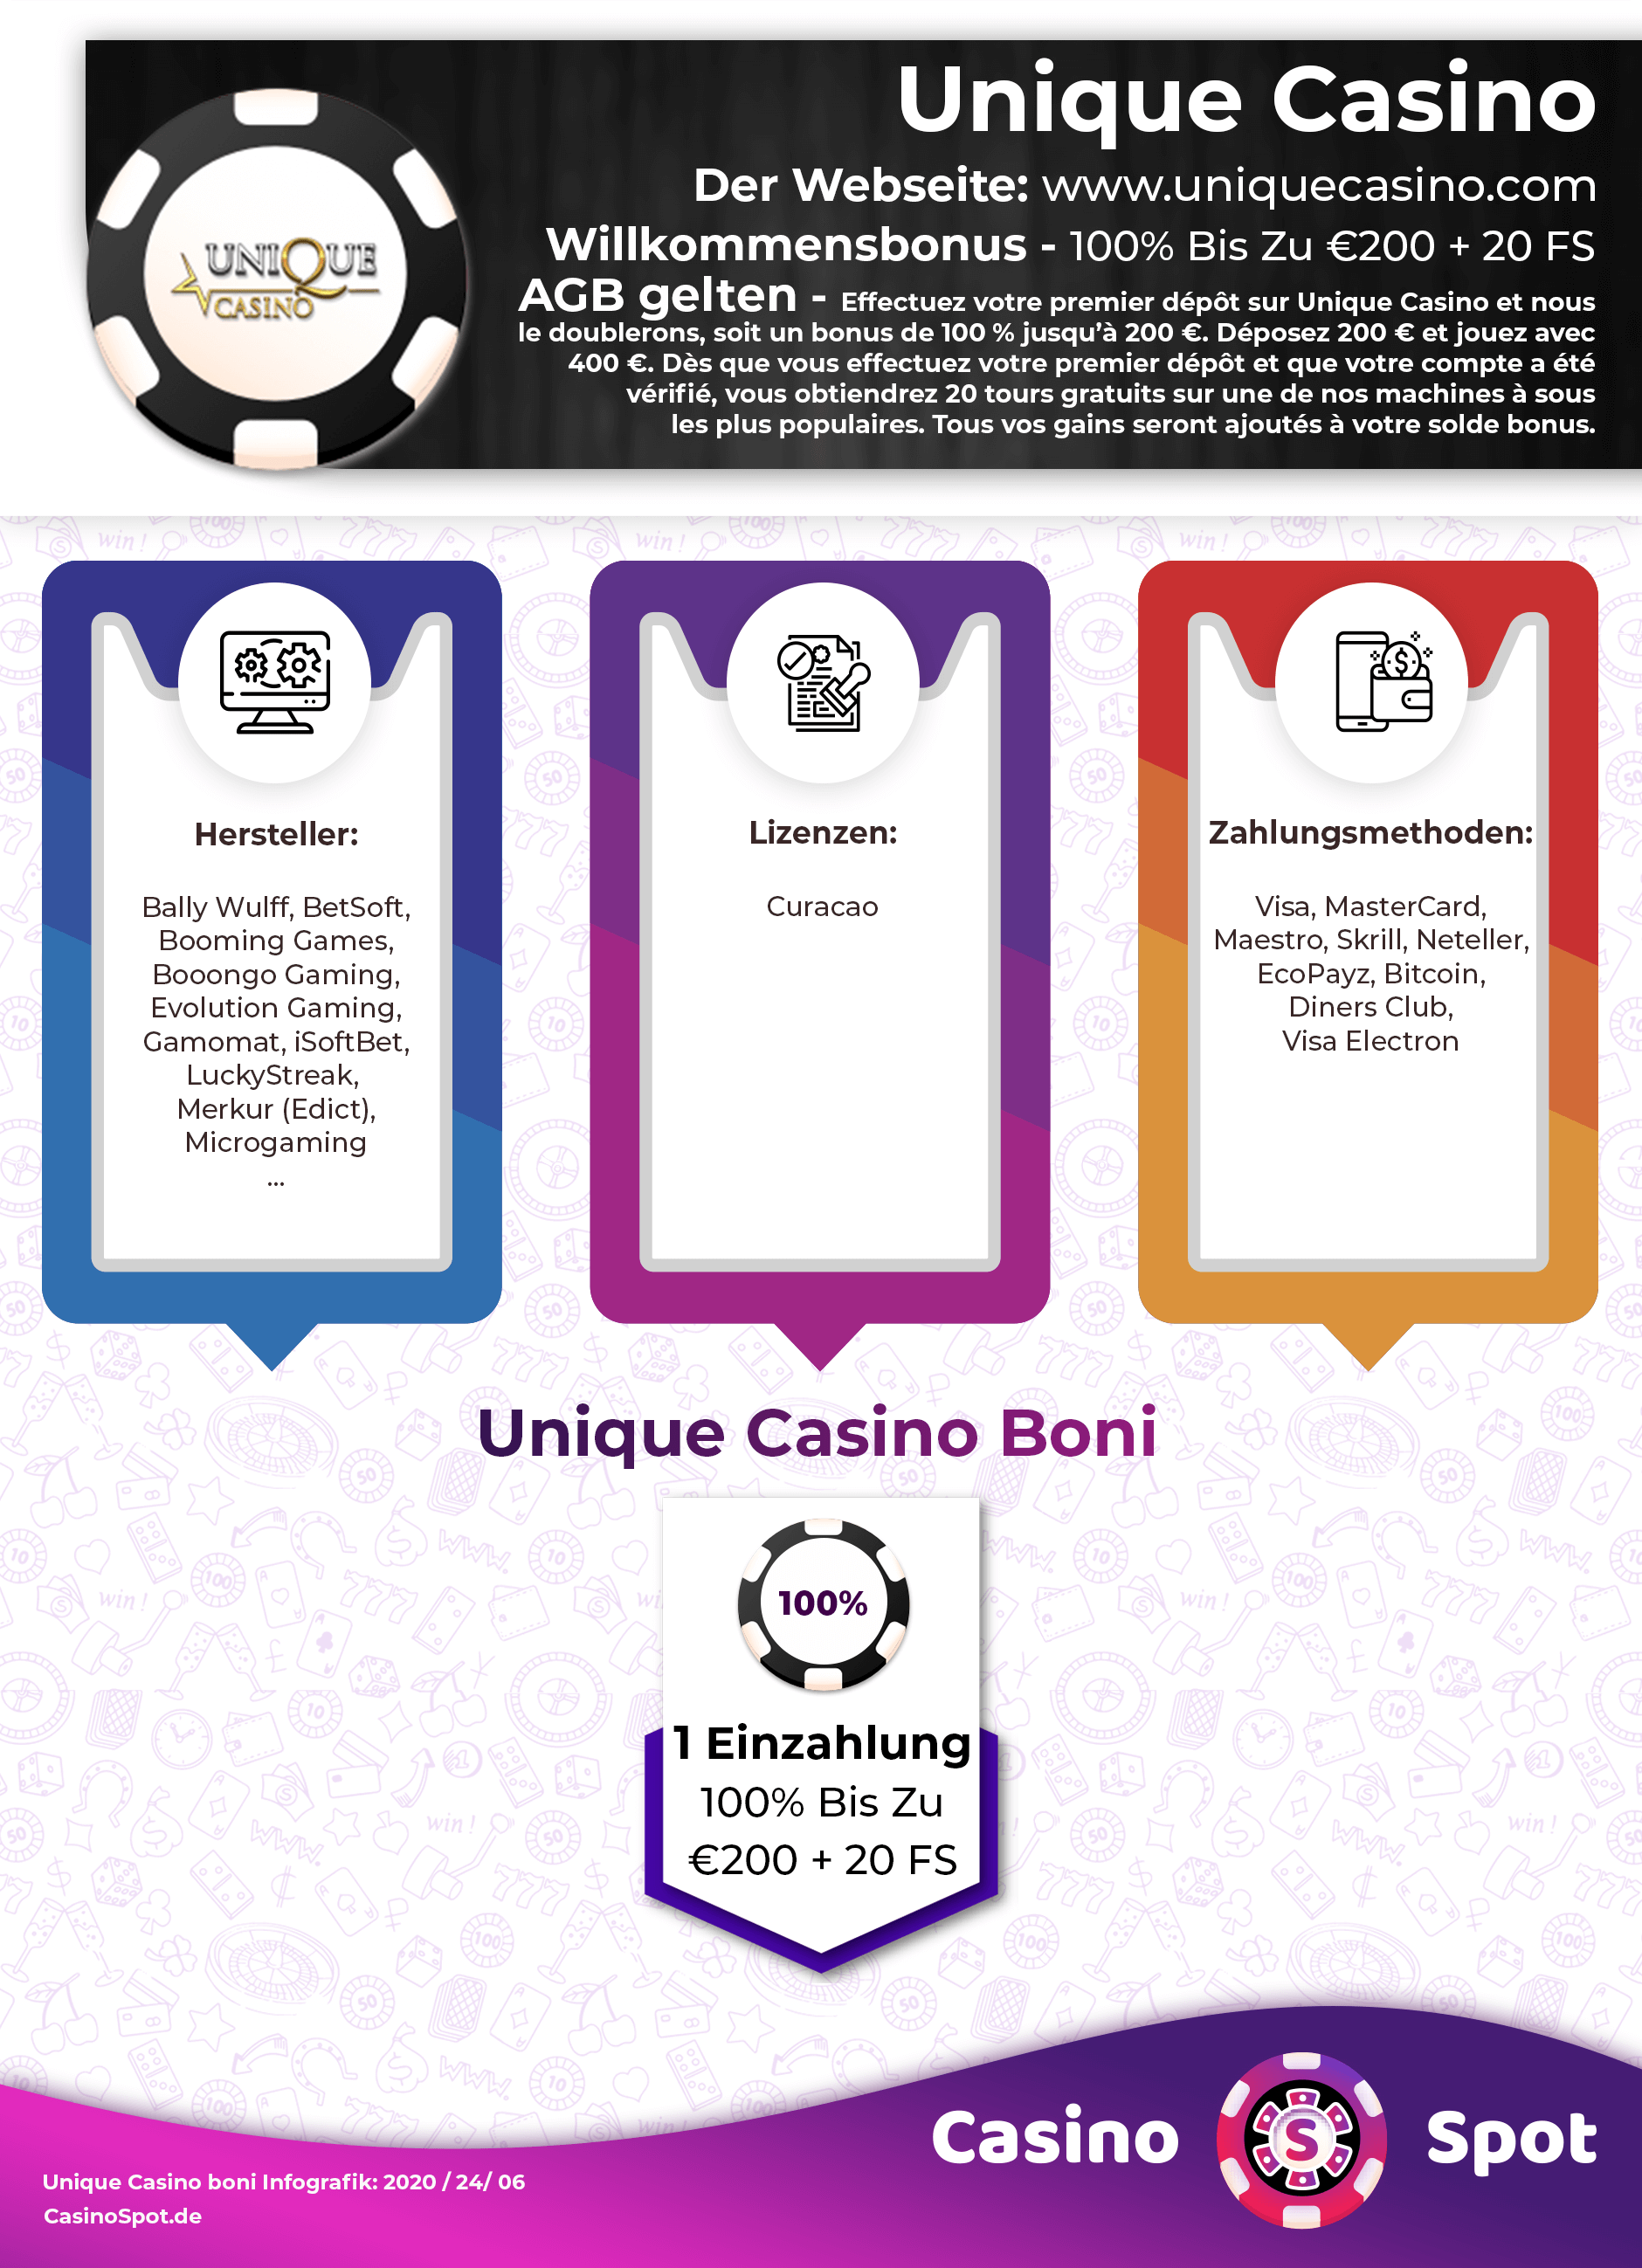 La guía del perezoso para Bono Unique Casino